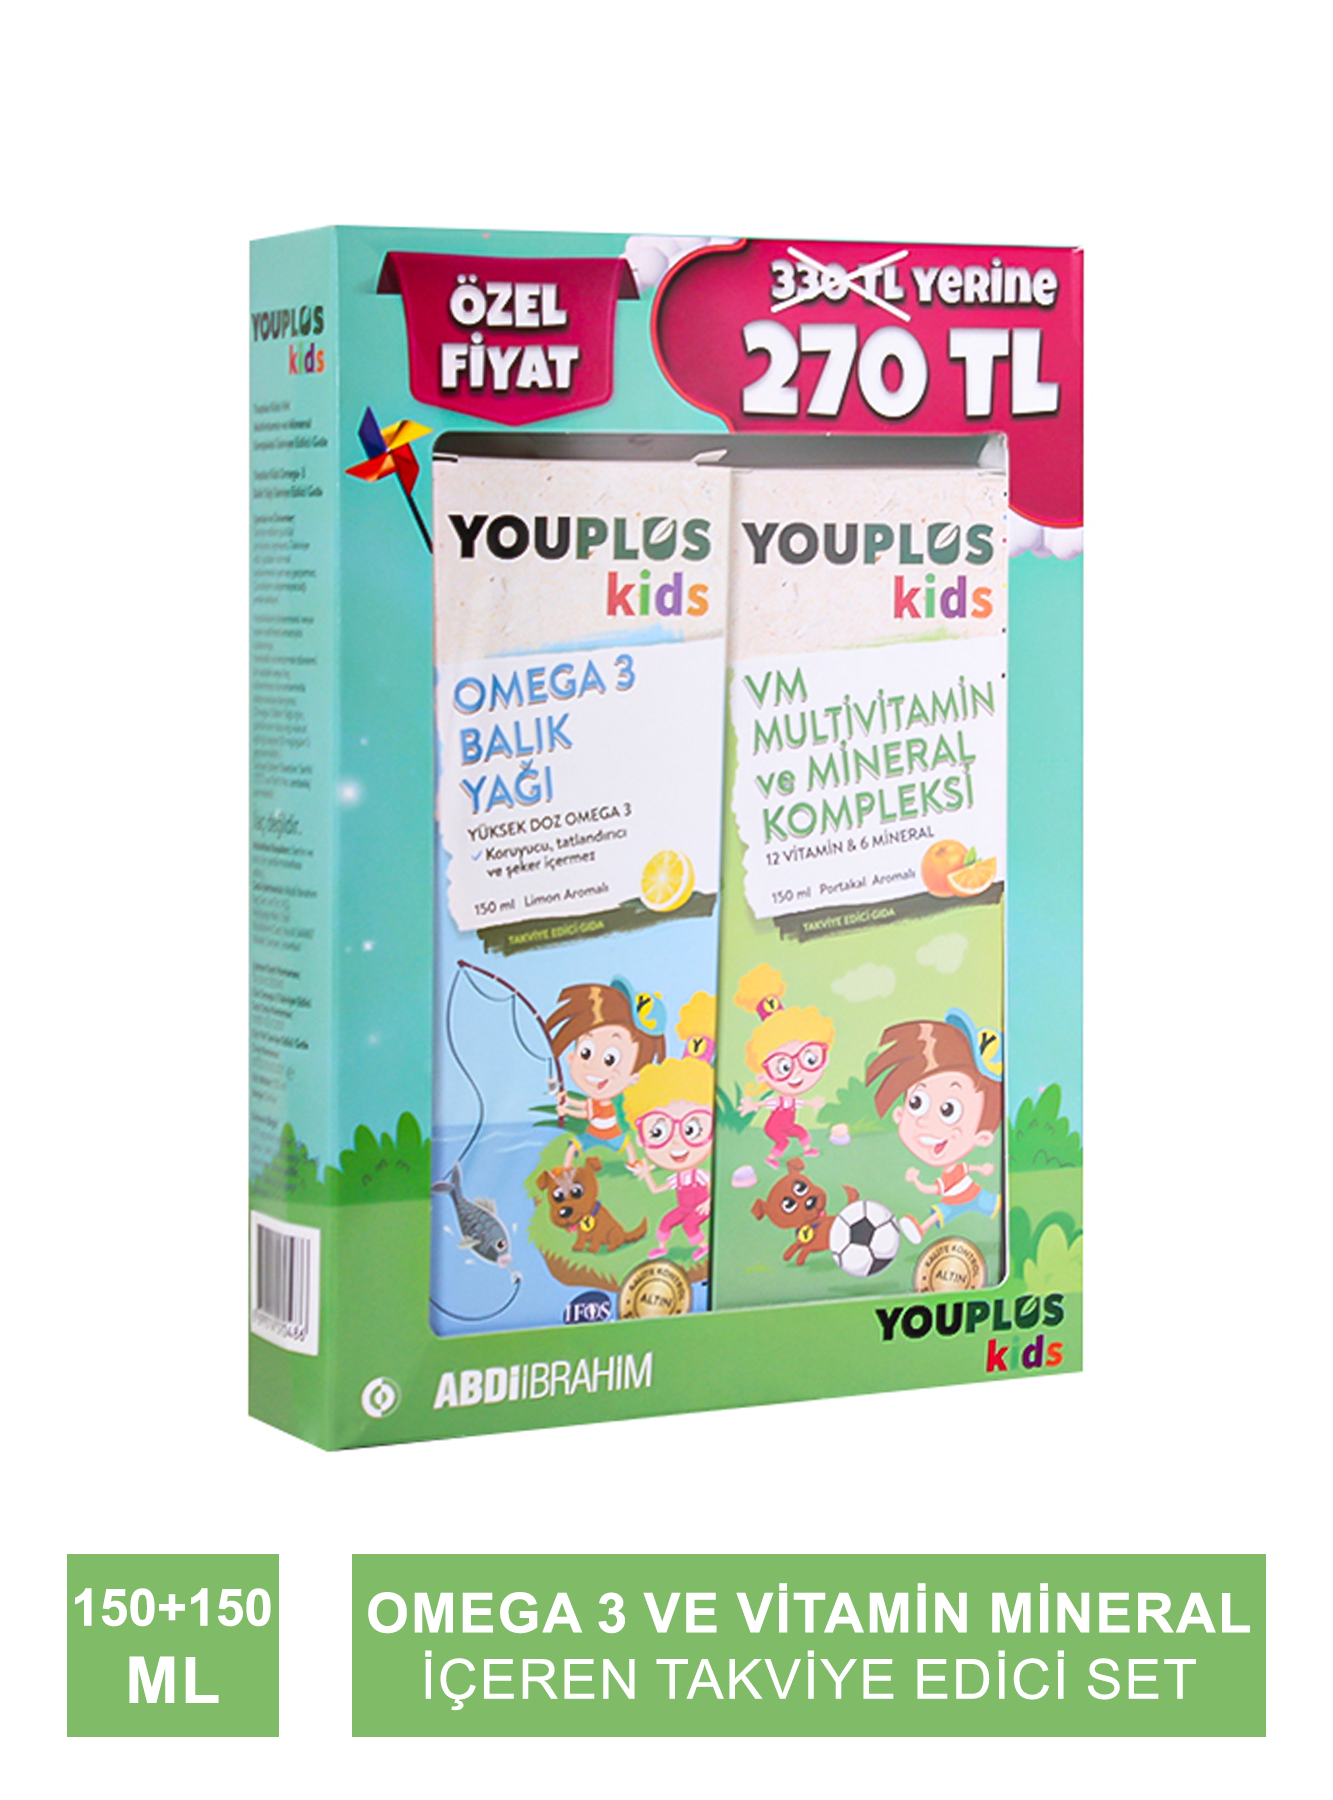 Outlet - Youplus Kids Omega 3 Balık Yağı + Kids VM 150+150 ml Set (S.K.T 11-2024)